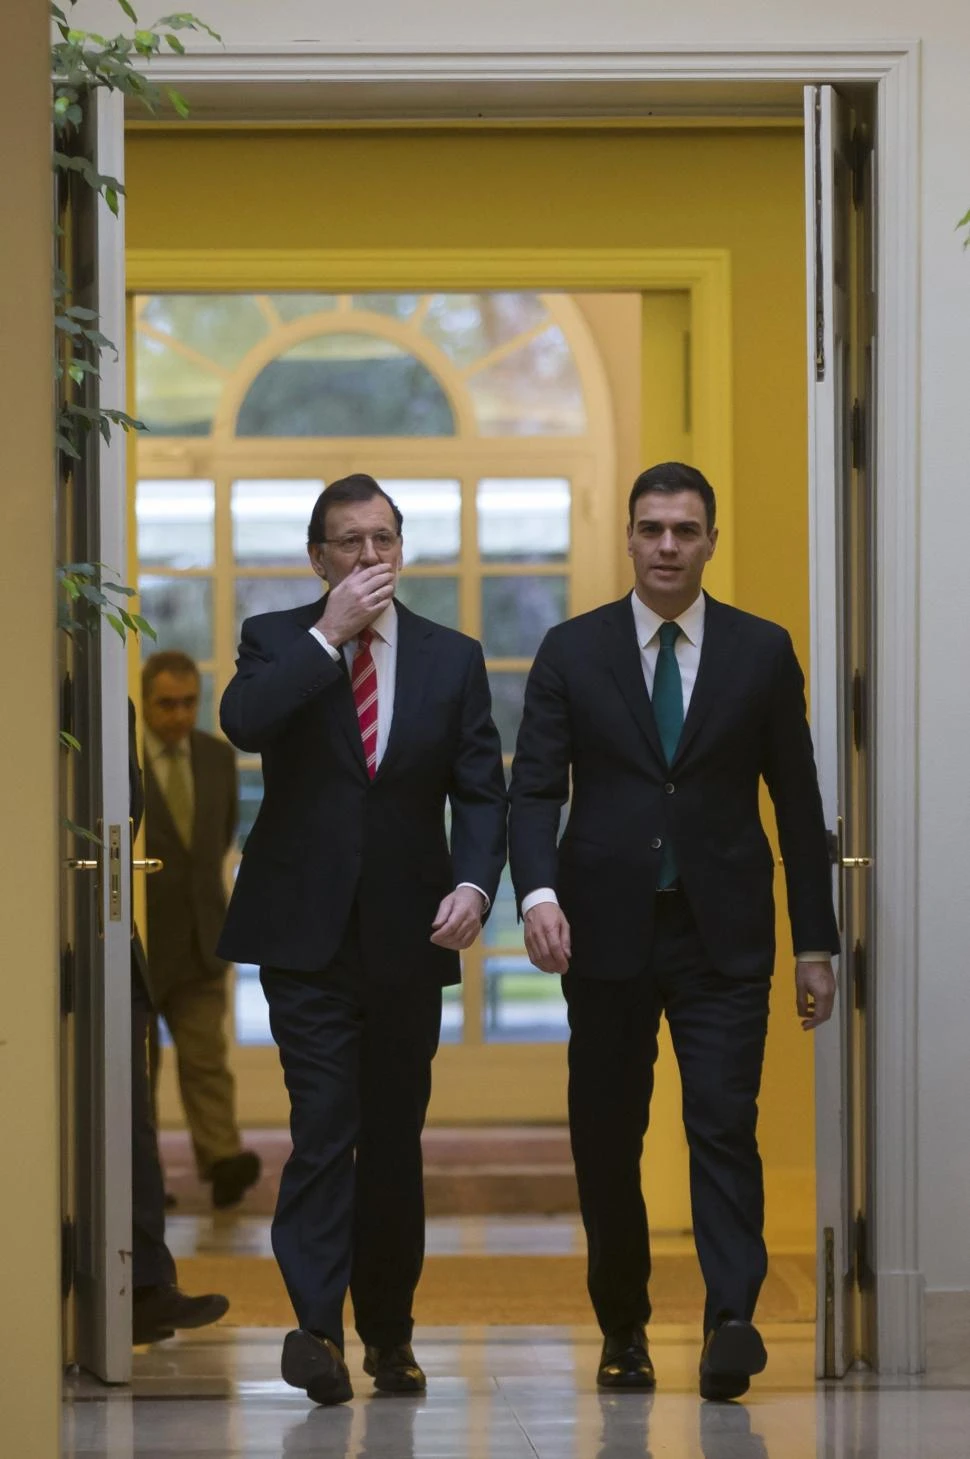 EN FEBRERO. Rajoy y Sánchez compartieron una reunión en el palacio. reuters